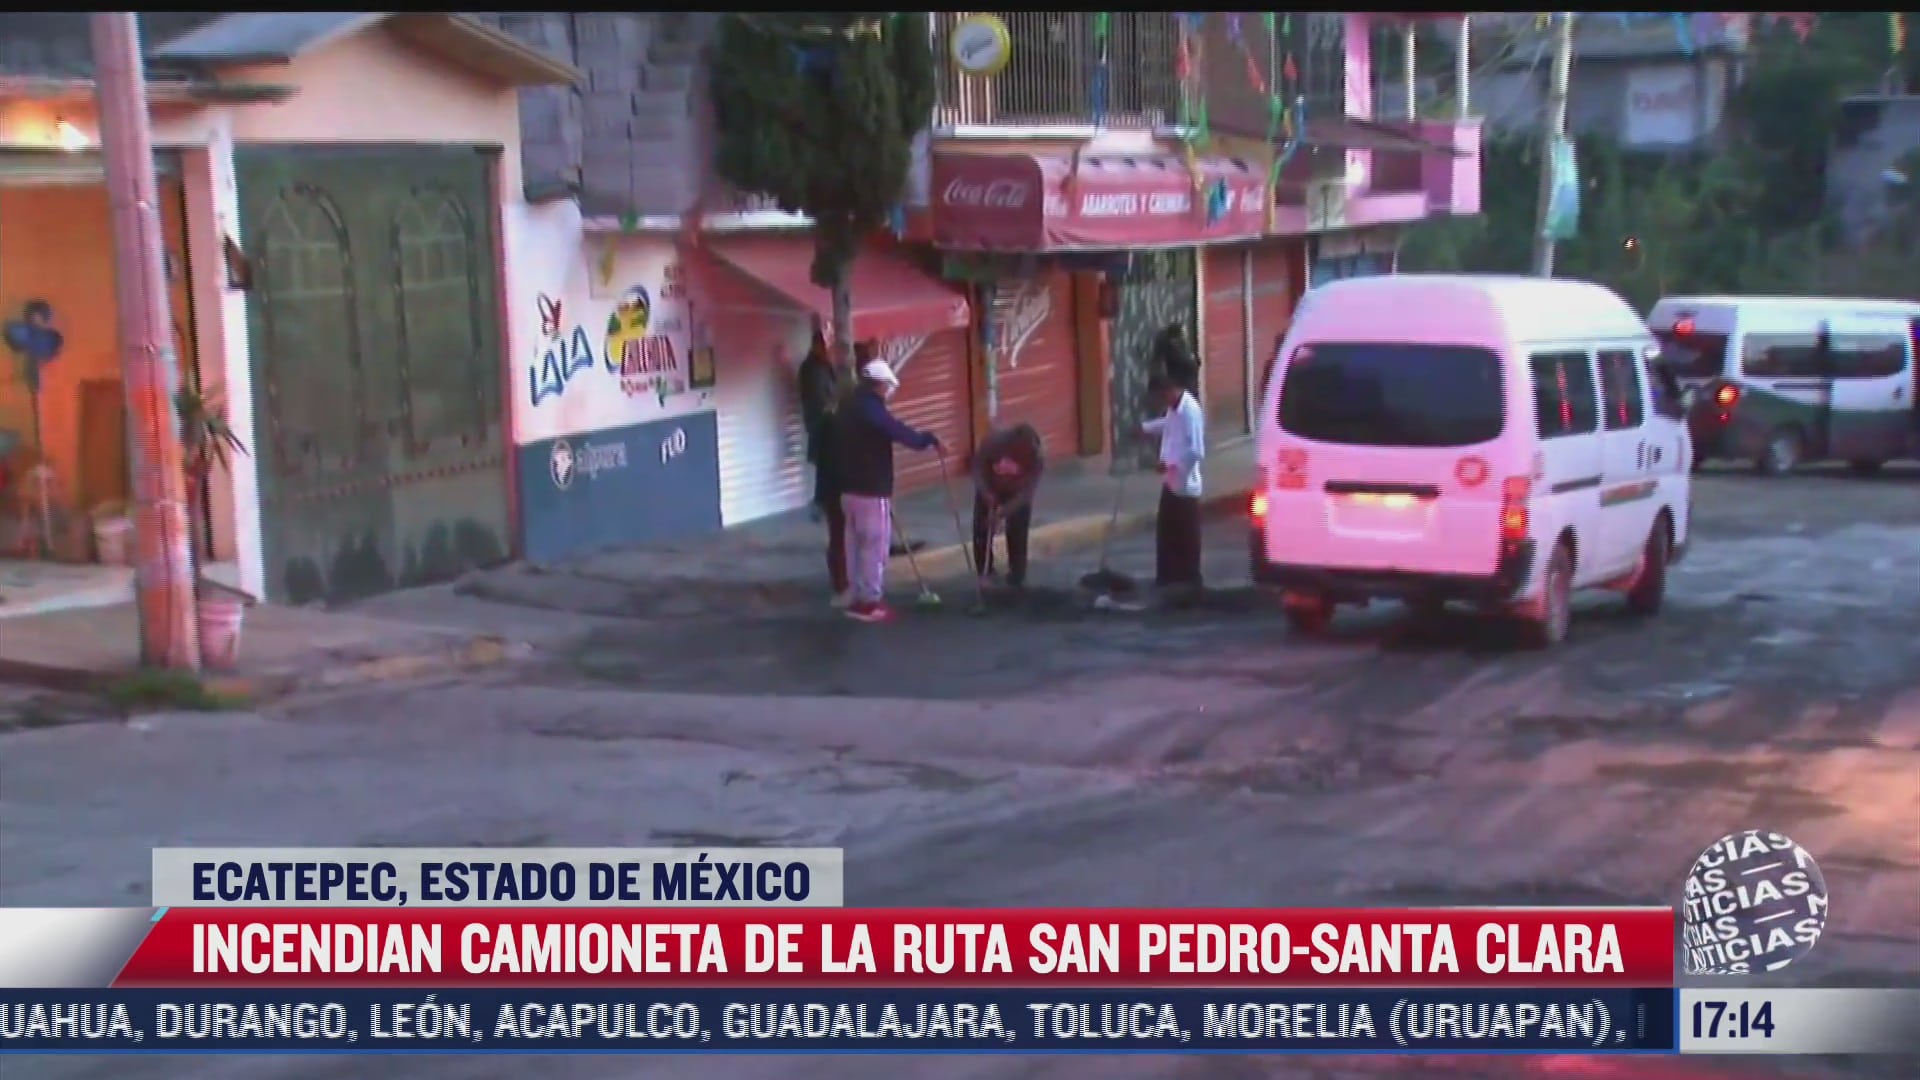 prenden fuego a camioneta del transporte publico en ecatepec por supuesta extorsion